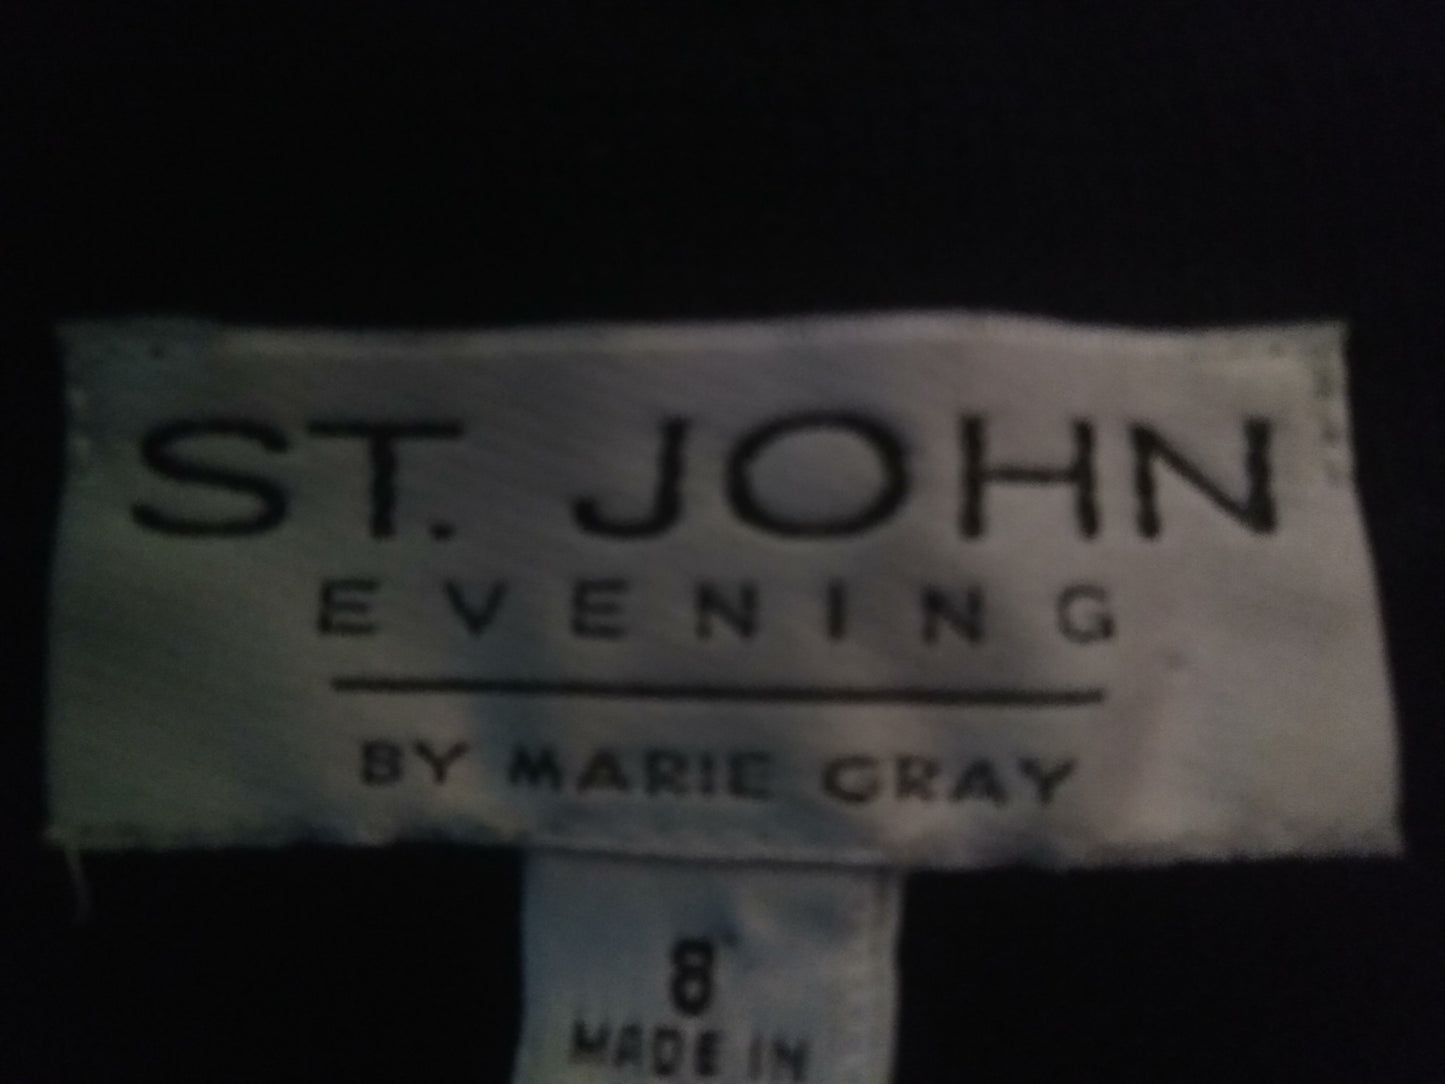 St. John Knit Evening Blazer Black Size 8 SKU 000256-7